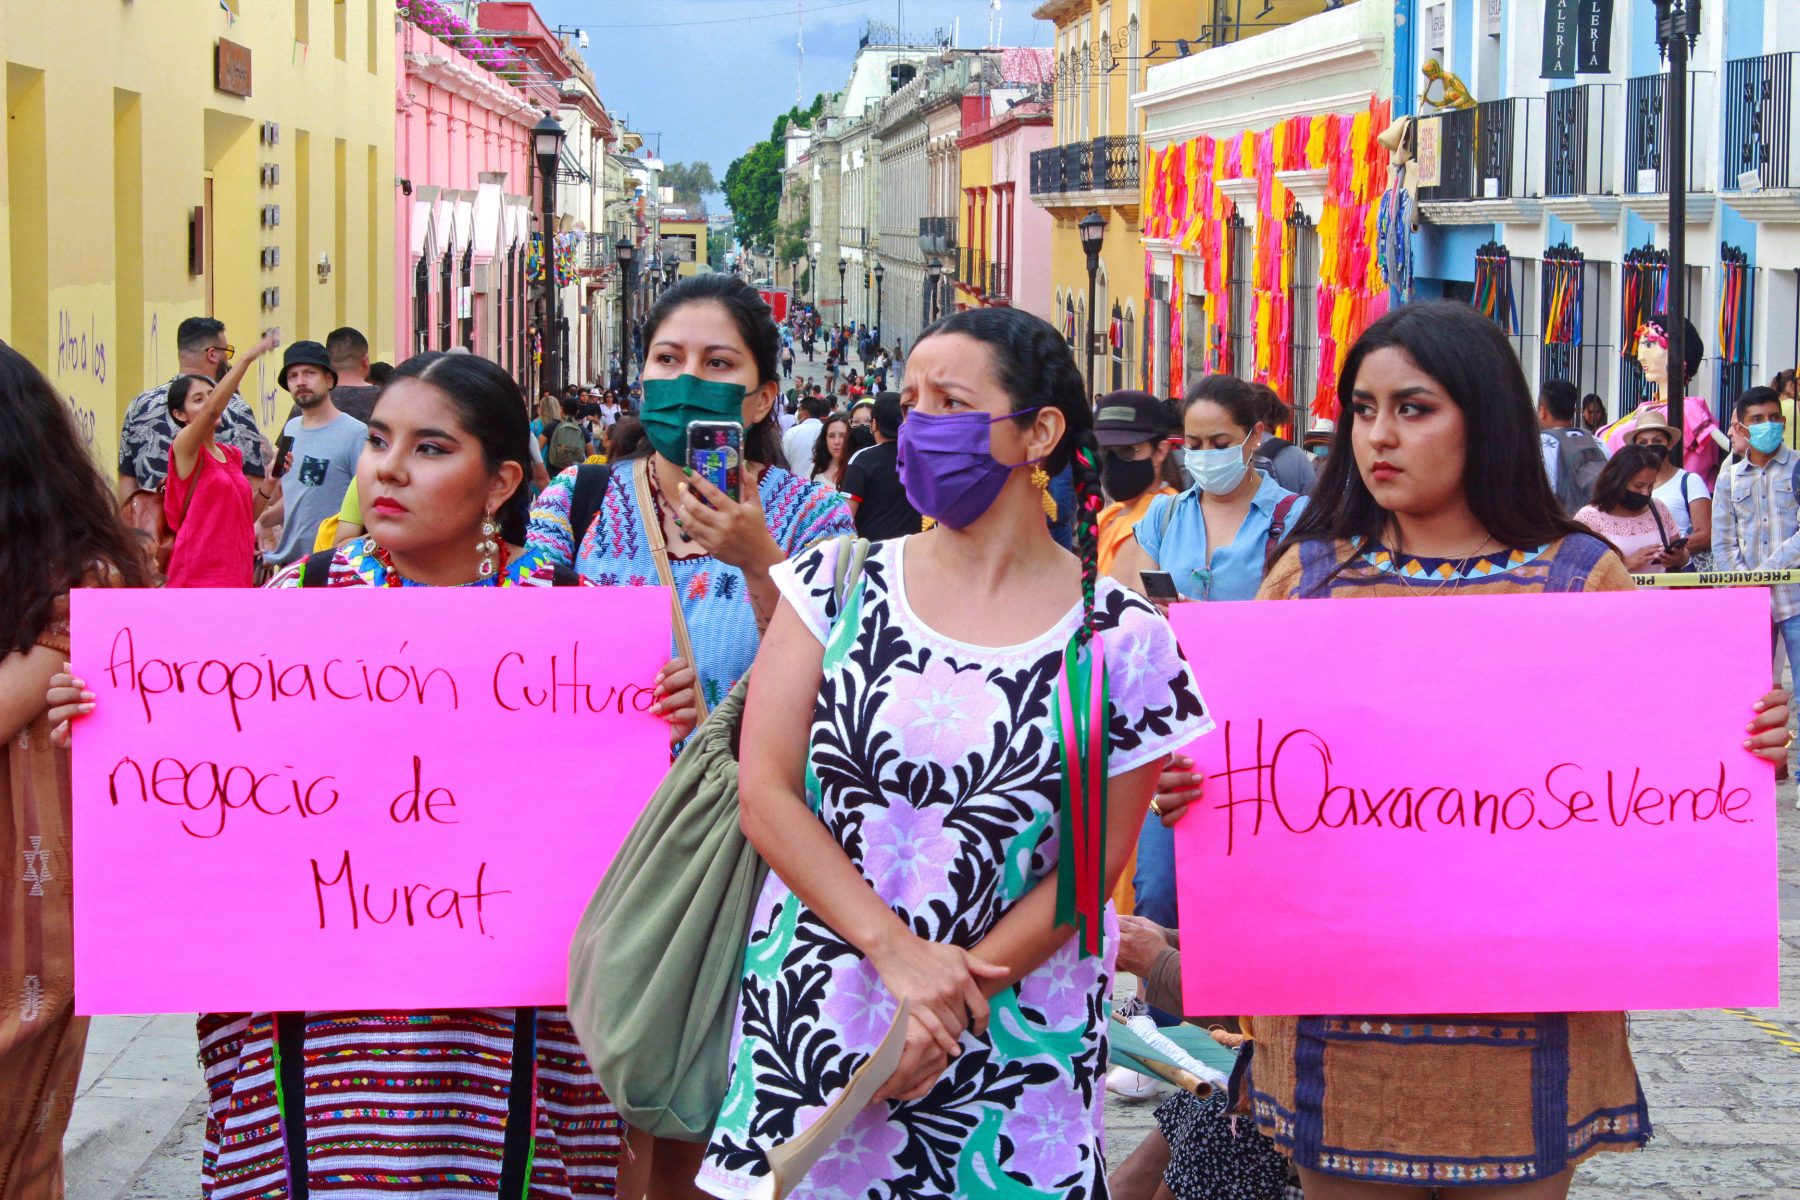 De nepotismo, moda y fiesta en Oaxaca.